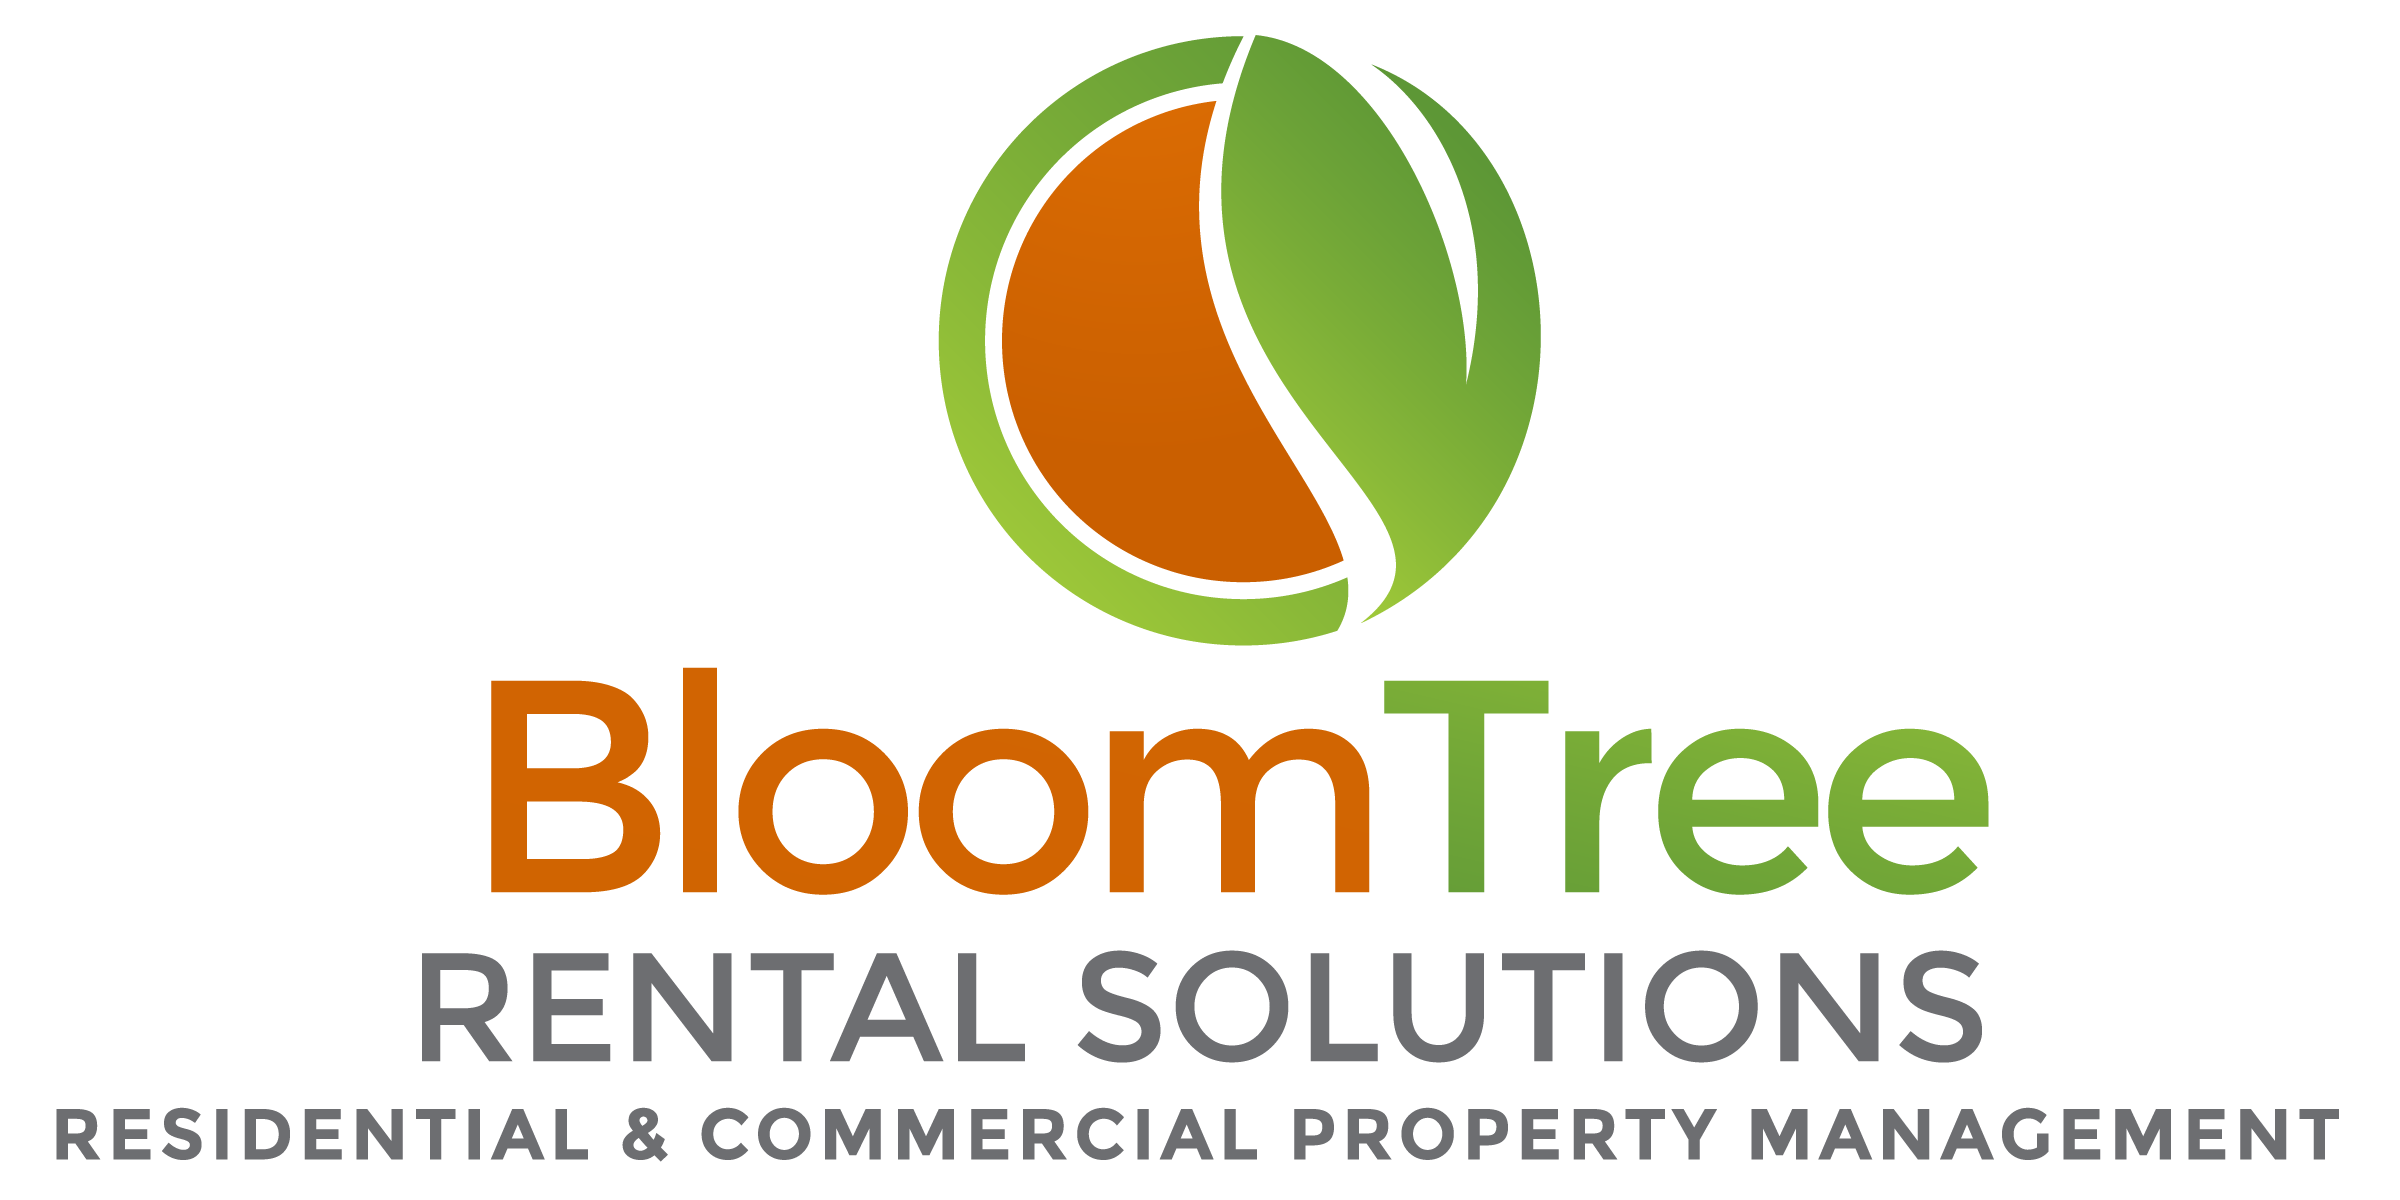 BloomTree Rental Solutions